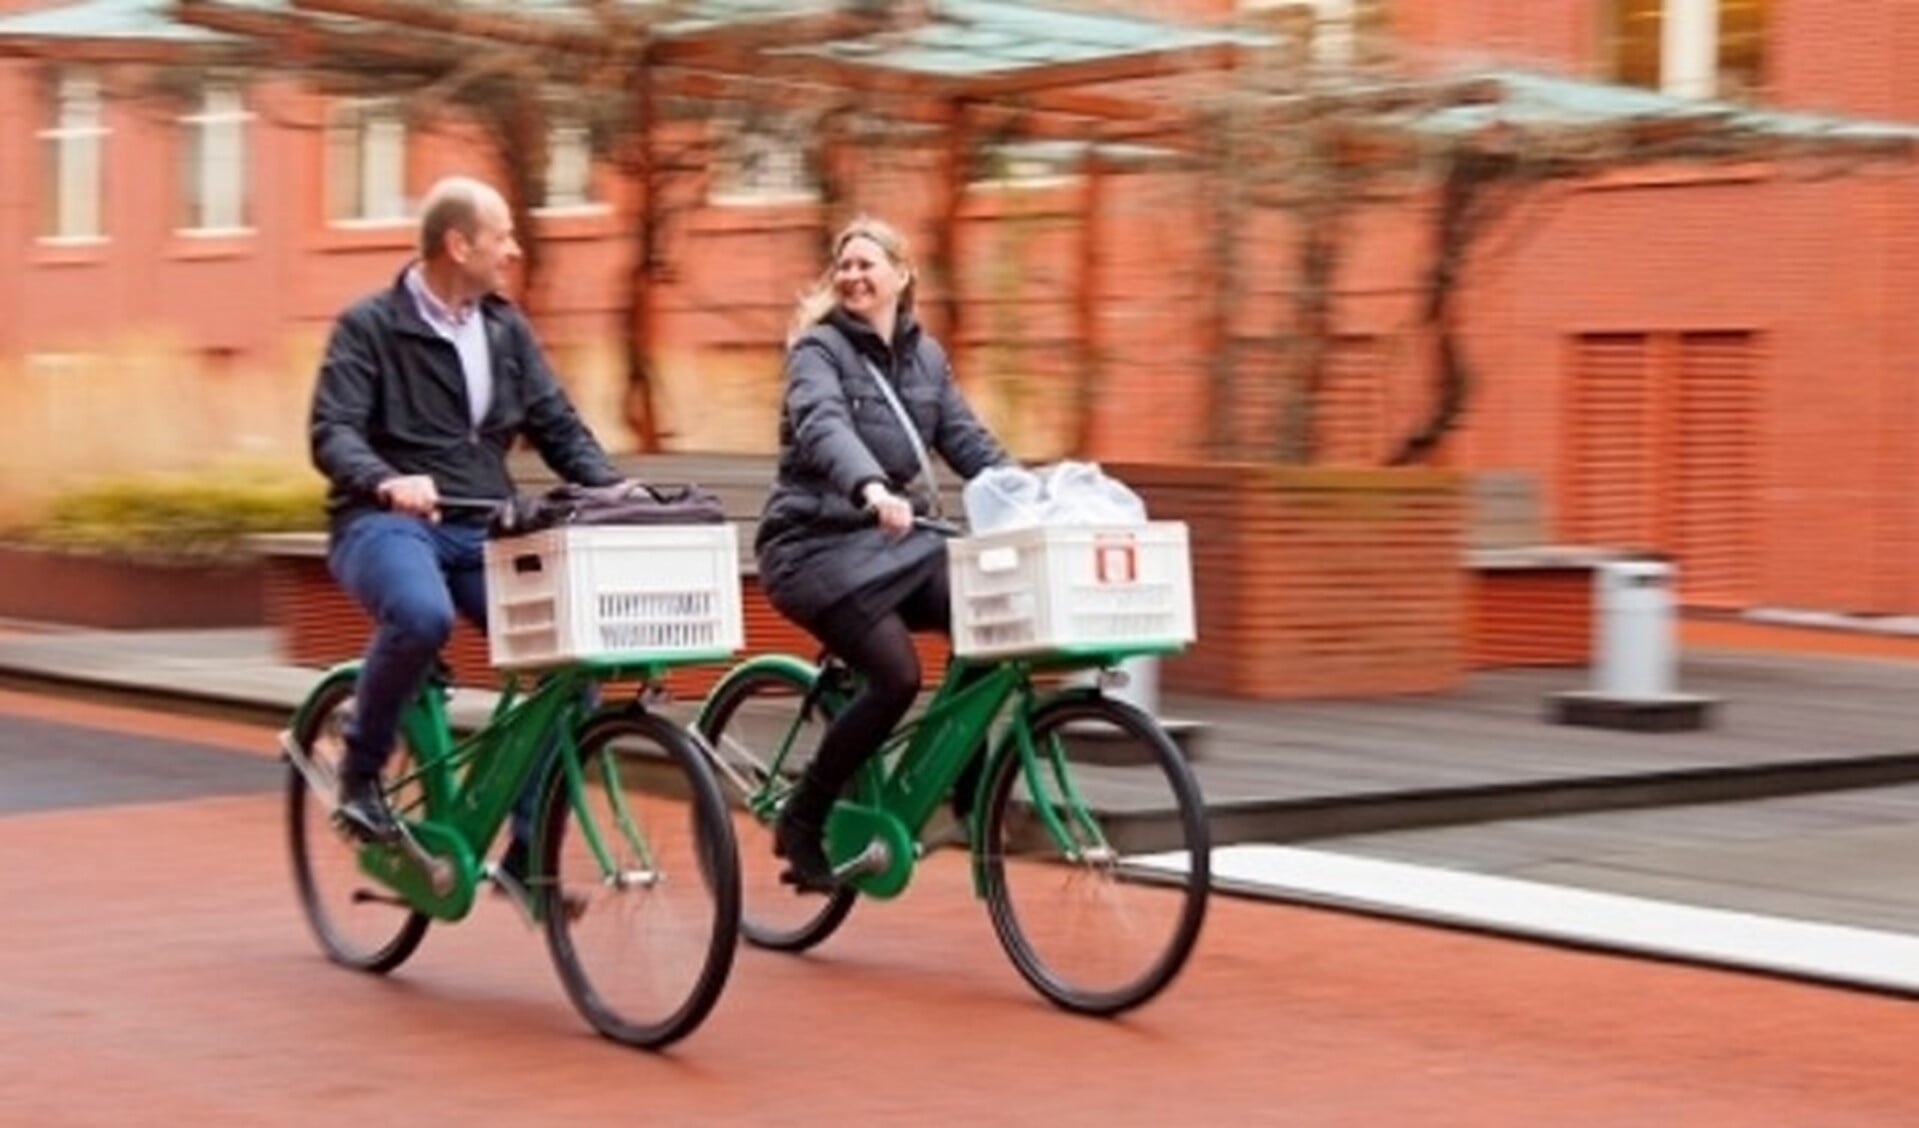 Twee Klaverblad-medewerkers nemen de fiets naar een gastles in de buurt